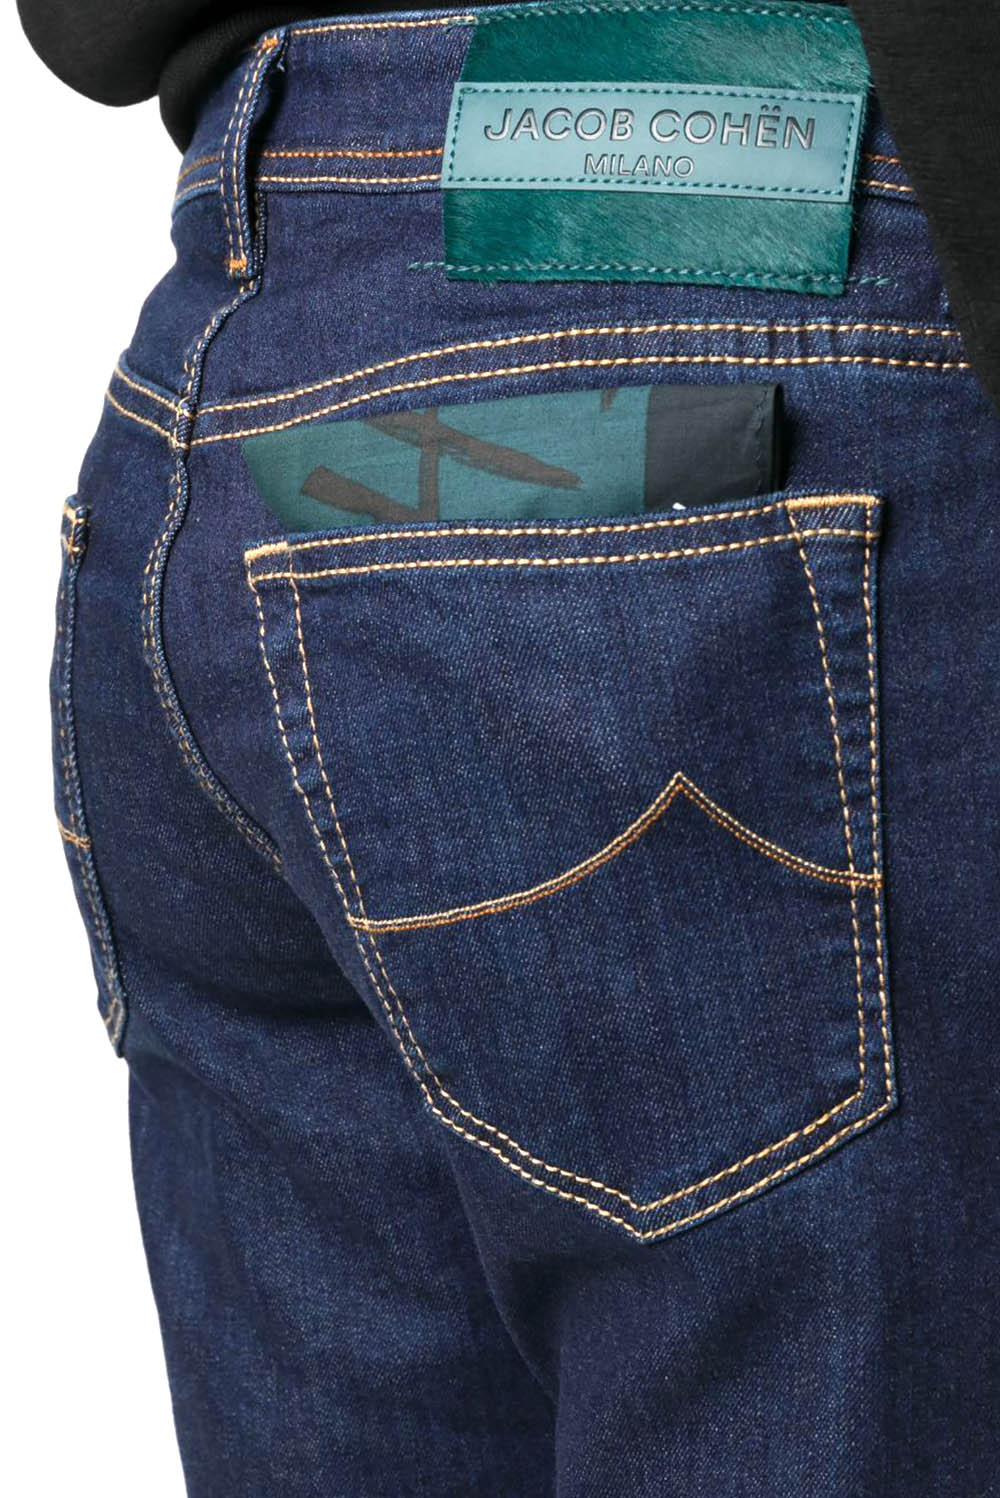  Jacob Cohen Jeans Slim Con Applicazione 561d Uomo - 4